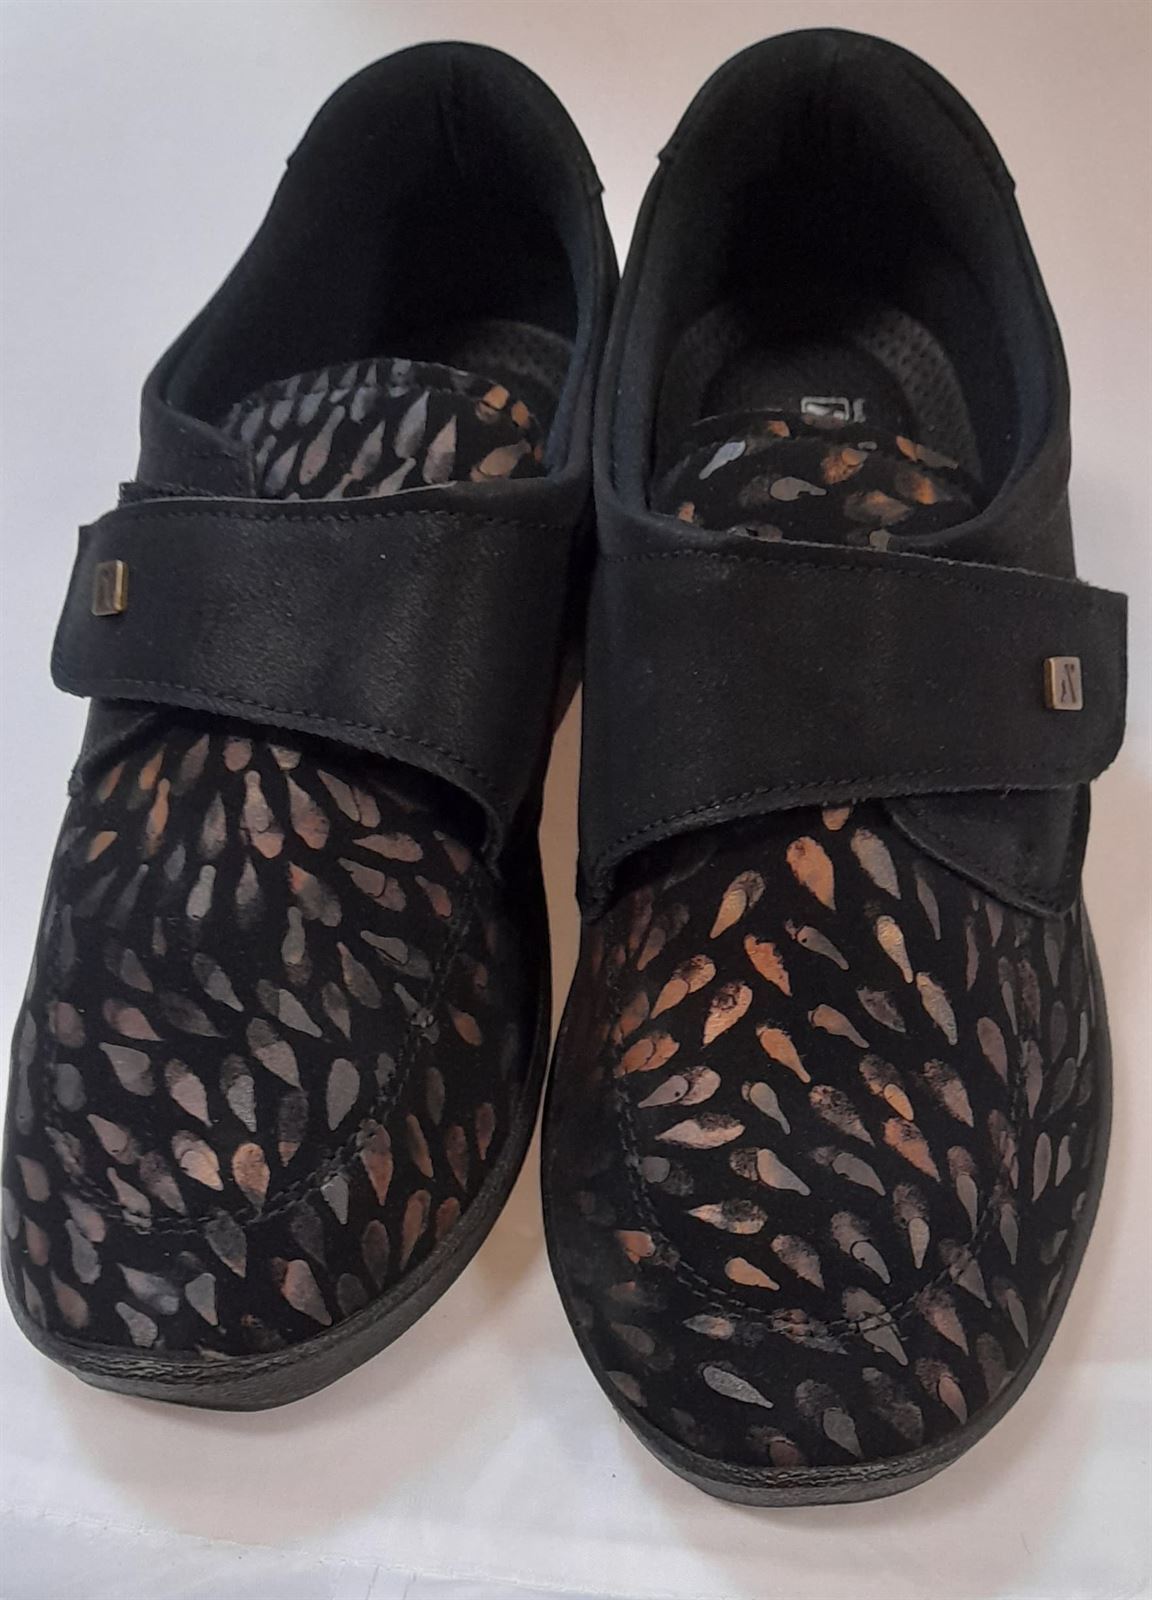 Zapato negro L33 - Imagen 1